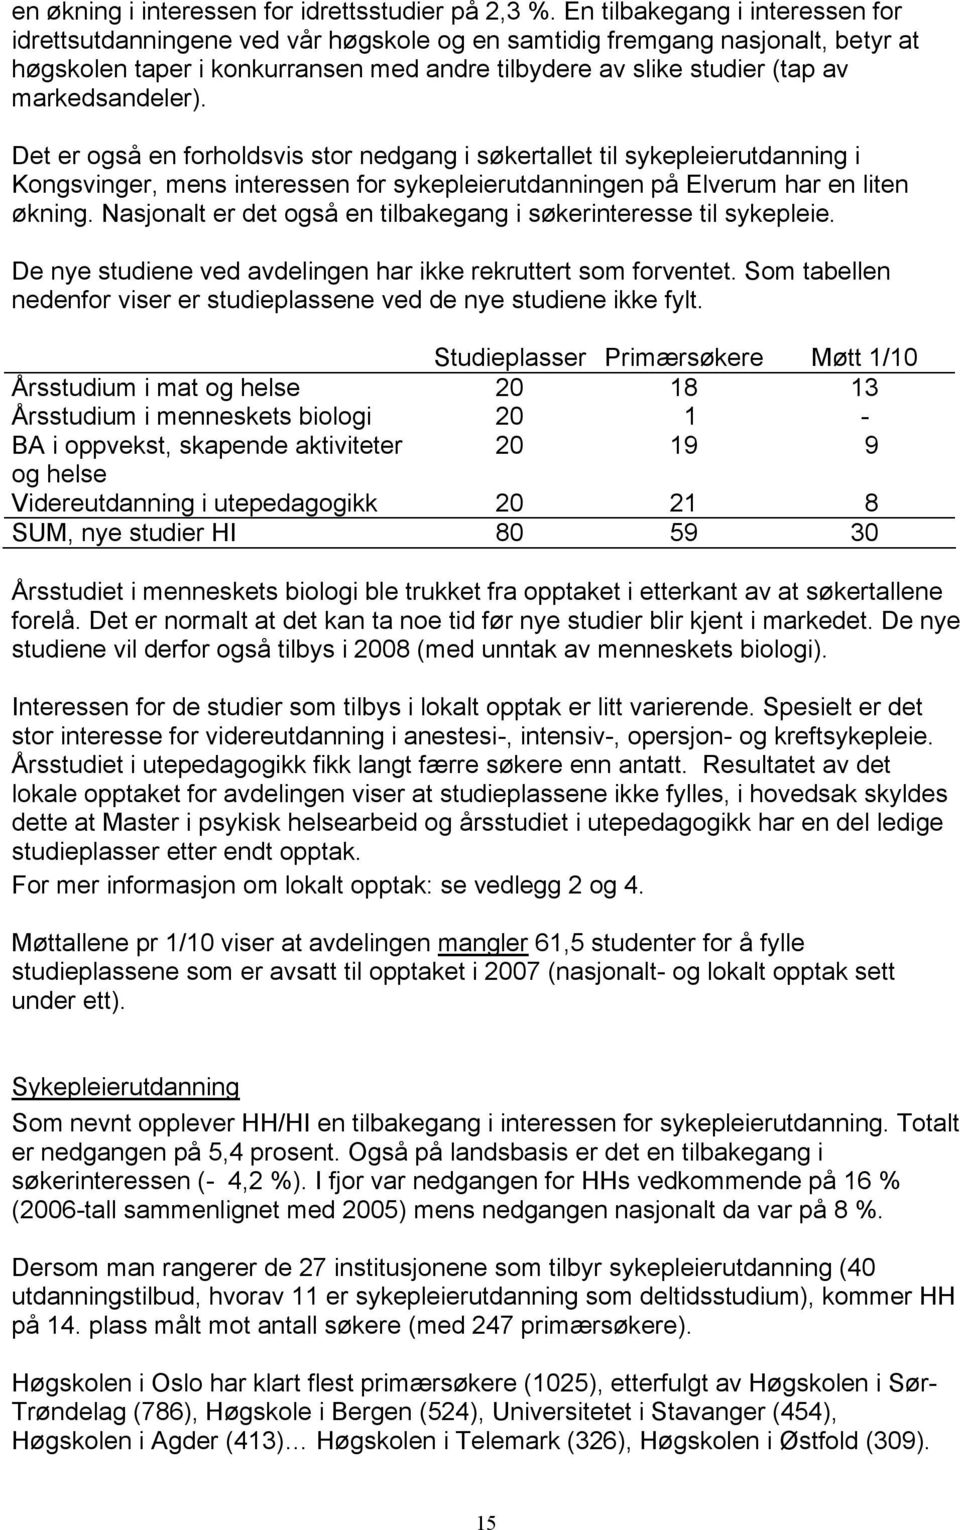 markedsandeler). Det er også en forholdsvis stor nedgang i søkertallet til sykepleierutdanning i Kongsvinger, mens interessen for sykepleierutdanningen på Elverum har en liten økning.